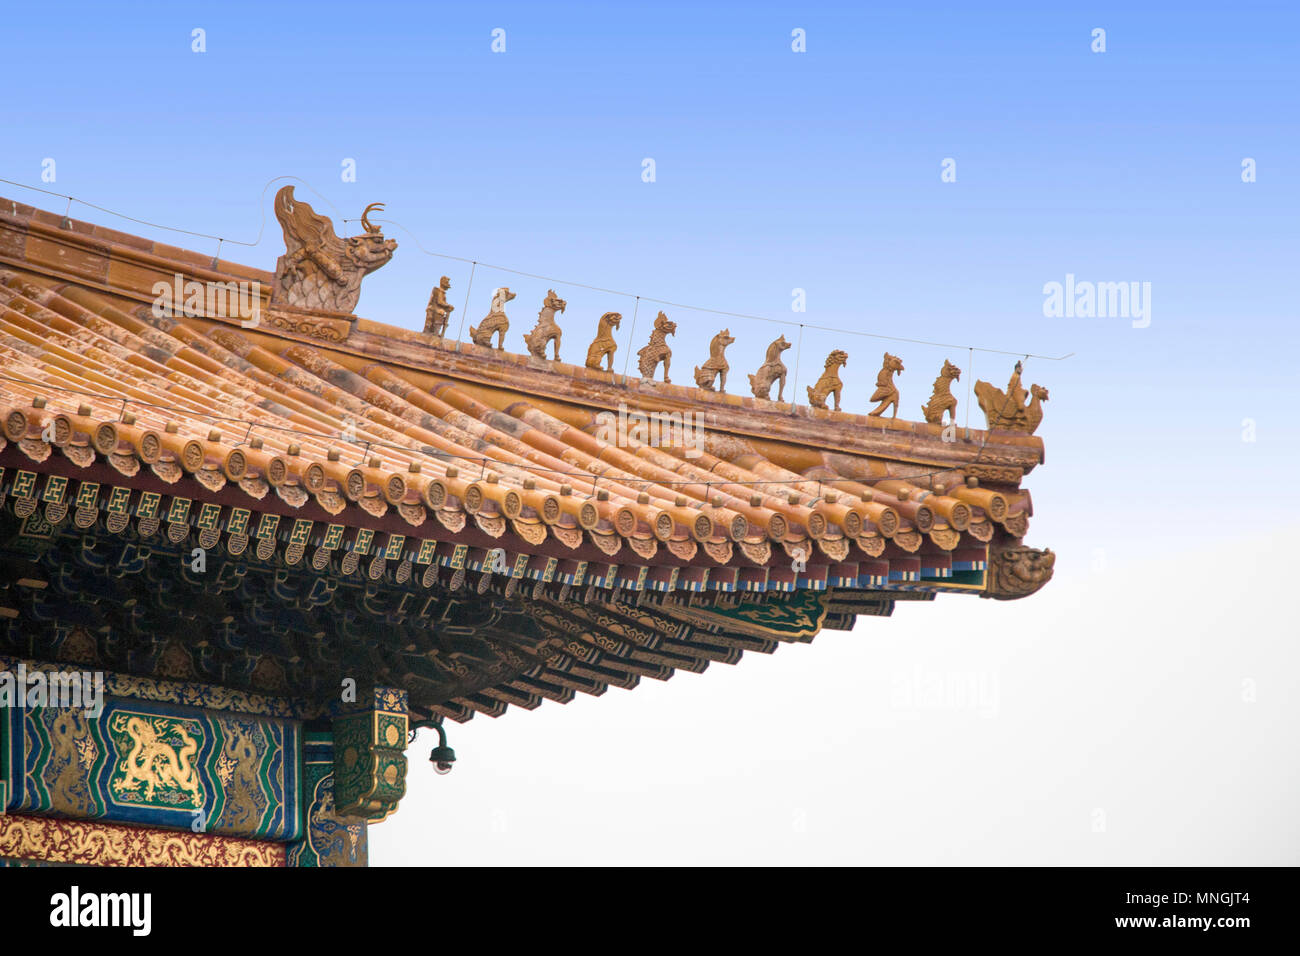 10 bestie crinale sul tetto della Sala della Suprema armonia, Città Proibita, Pechino, Cina. Bestie accovacciate in cinese dalle fiabe cinesi. Foto Stock